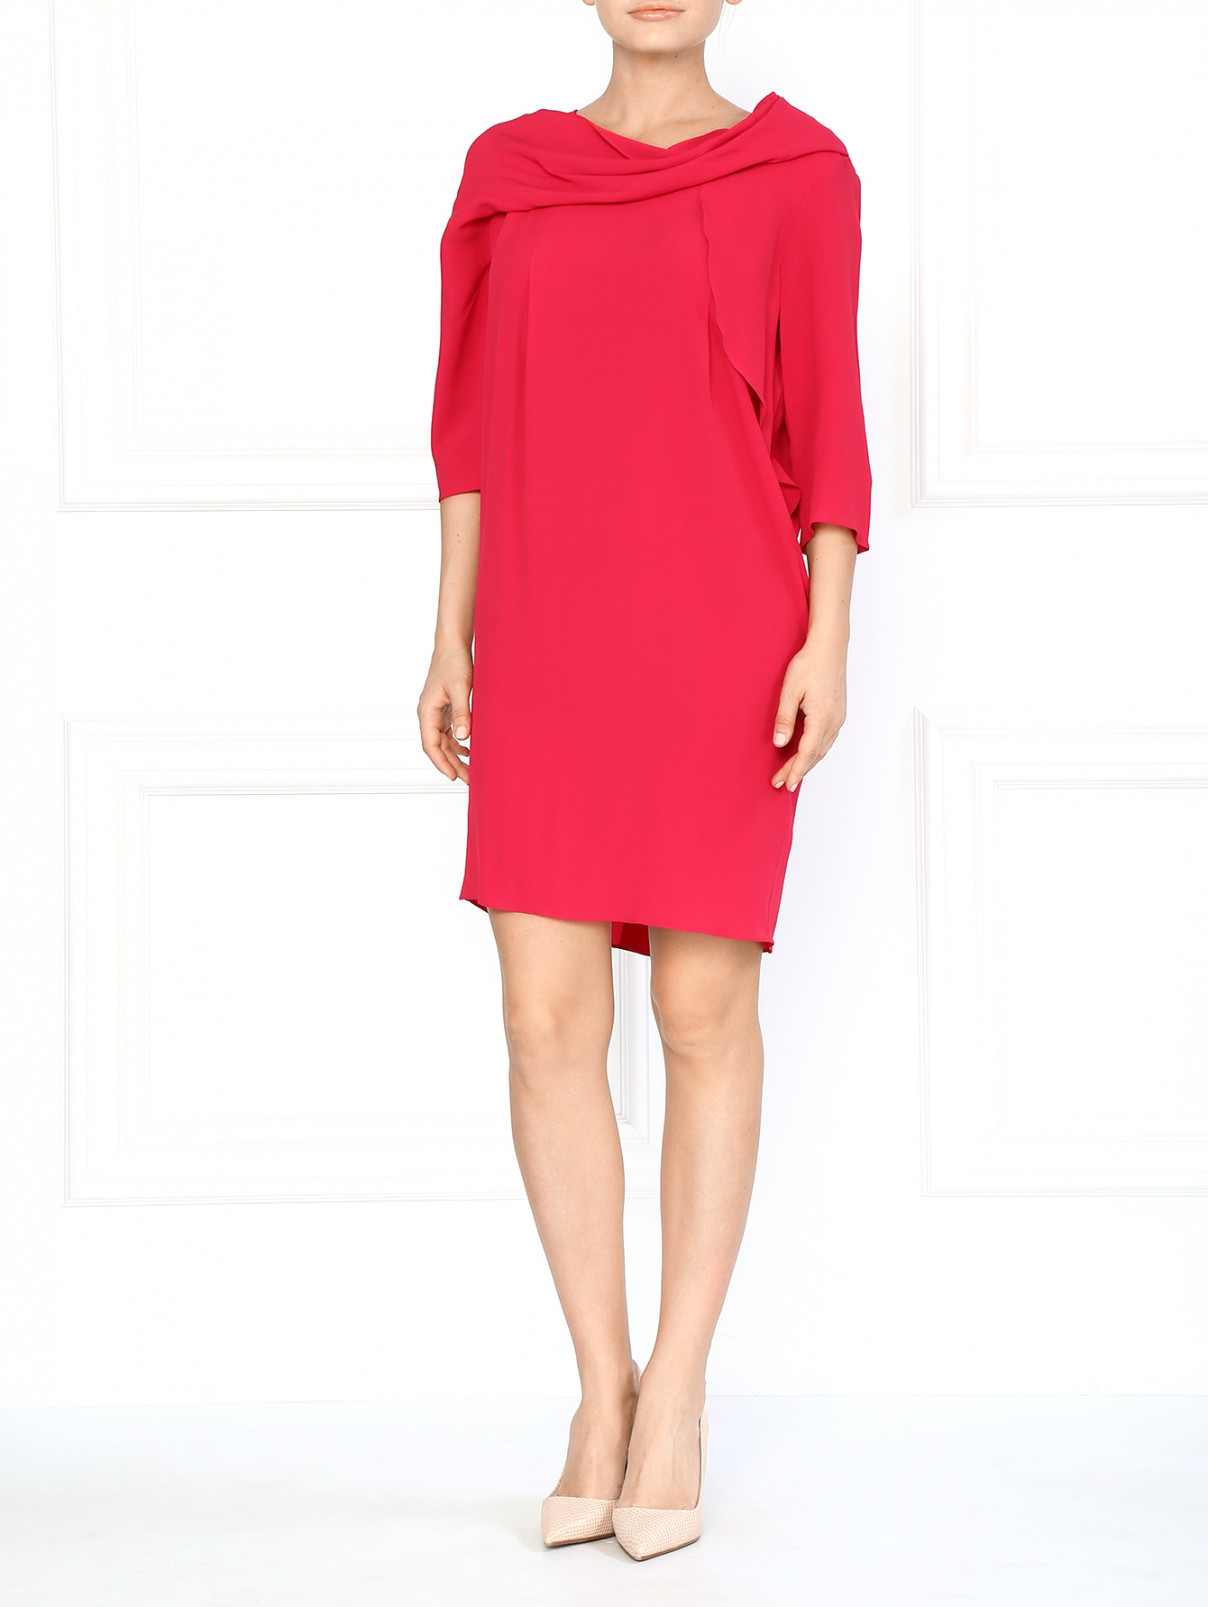 Платье с рукавами 3/4 и асимметричной драпировкой ворота Anne Valerie Hash  –  Модель Общий вид  – Цвет:  Розовый